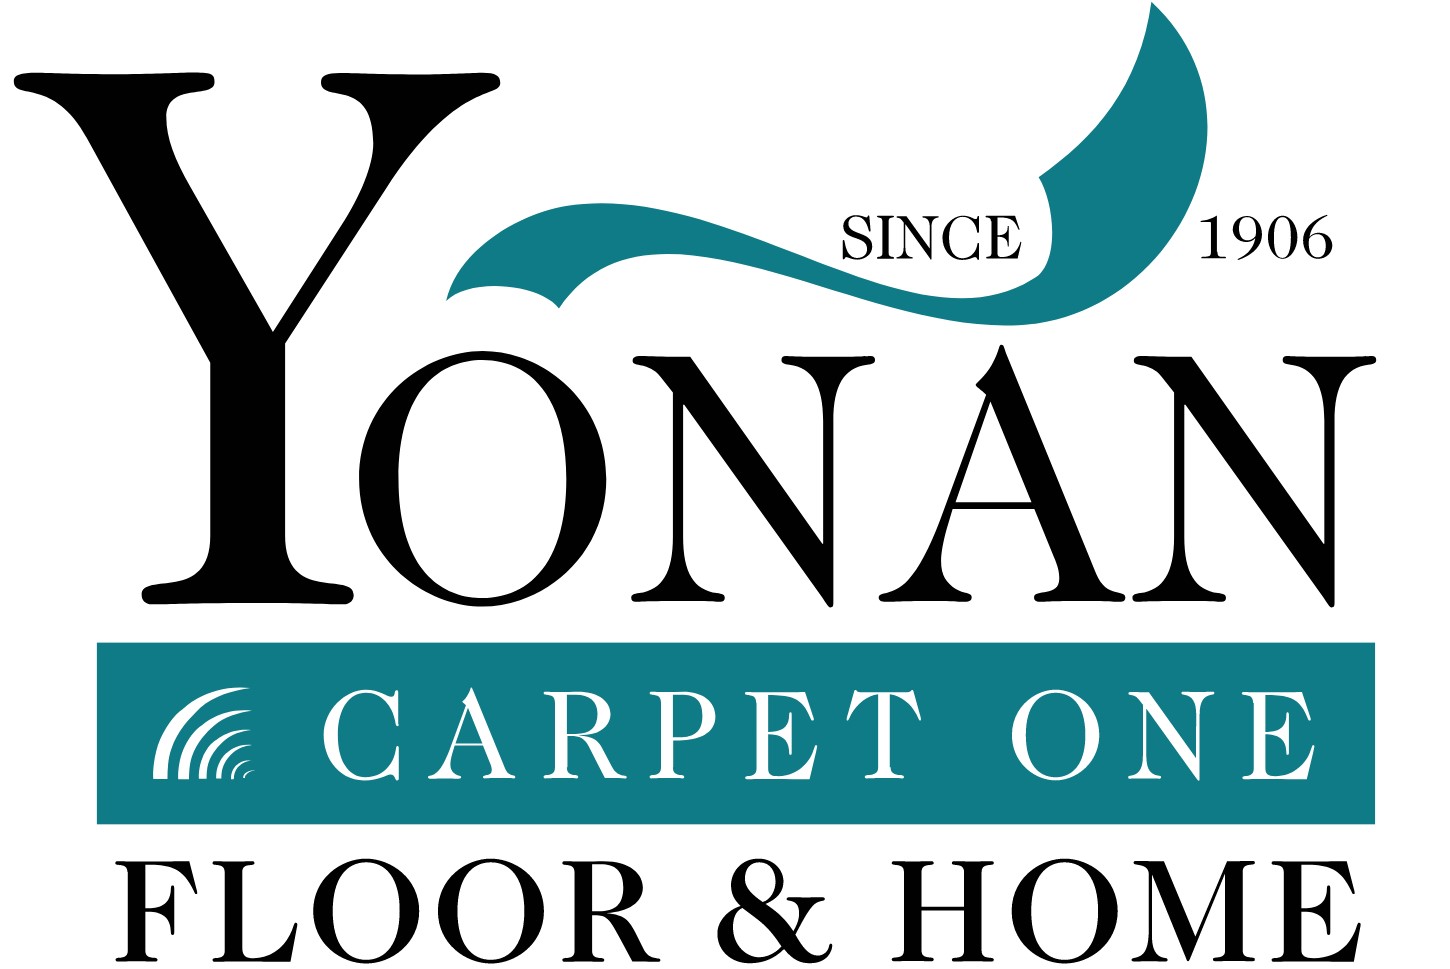 Yonan Carpet One